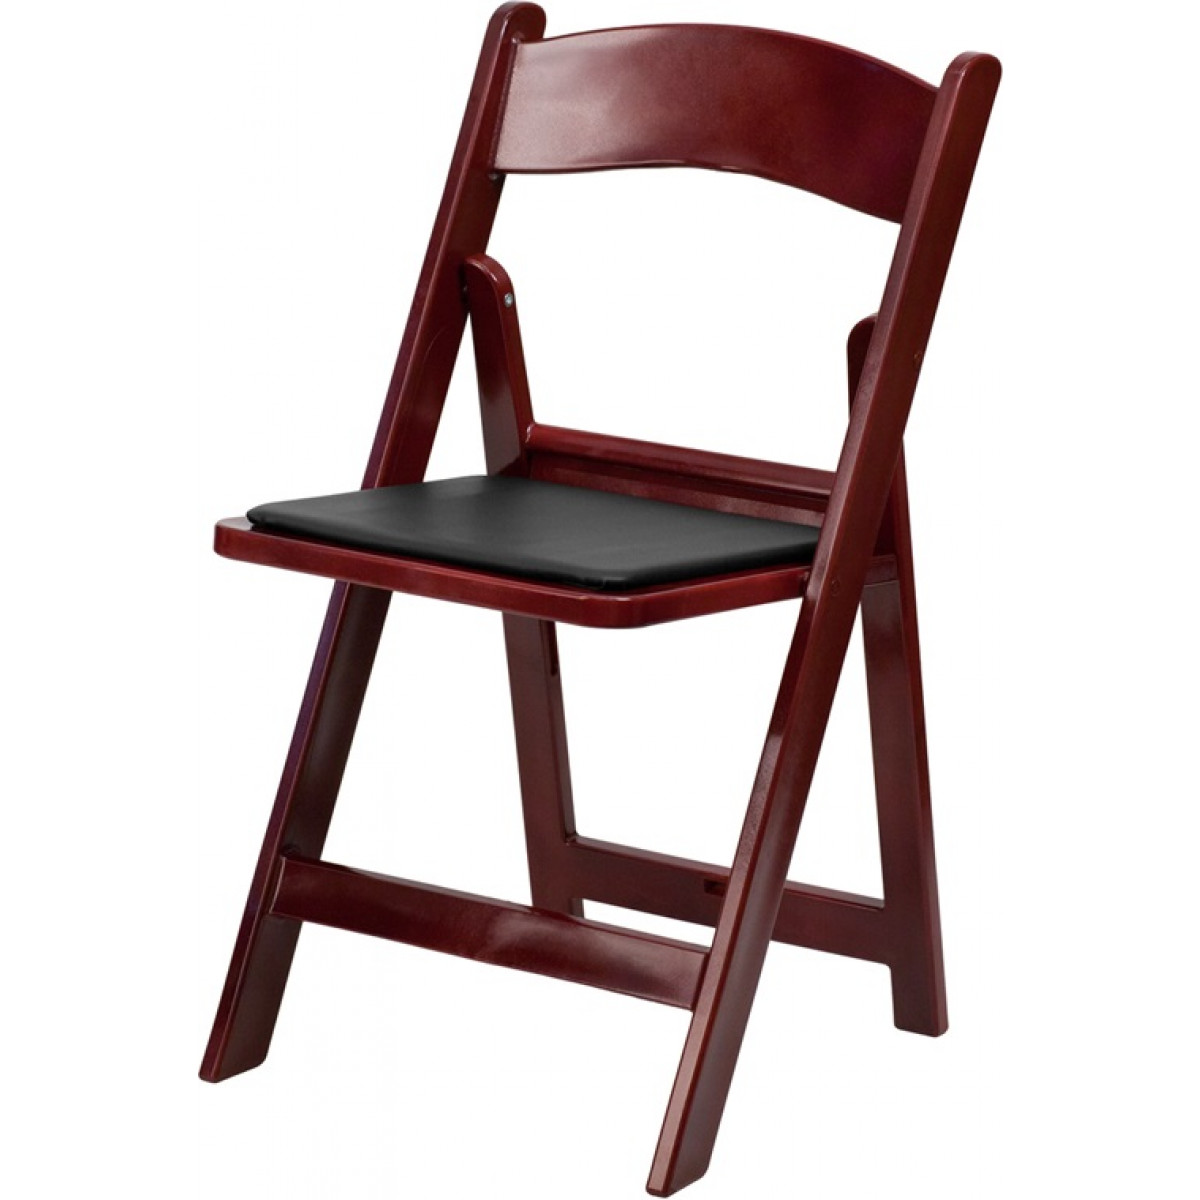 Mahogany Resin Chair - Kosins